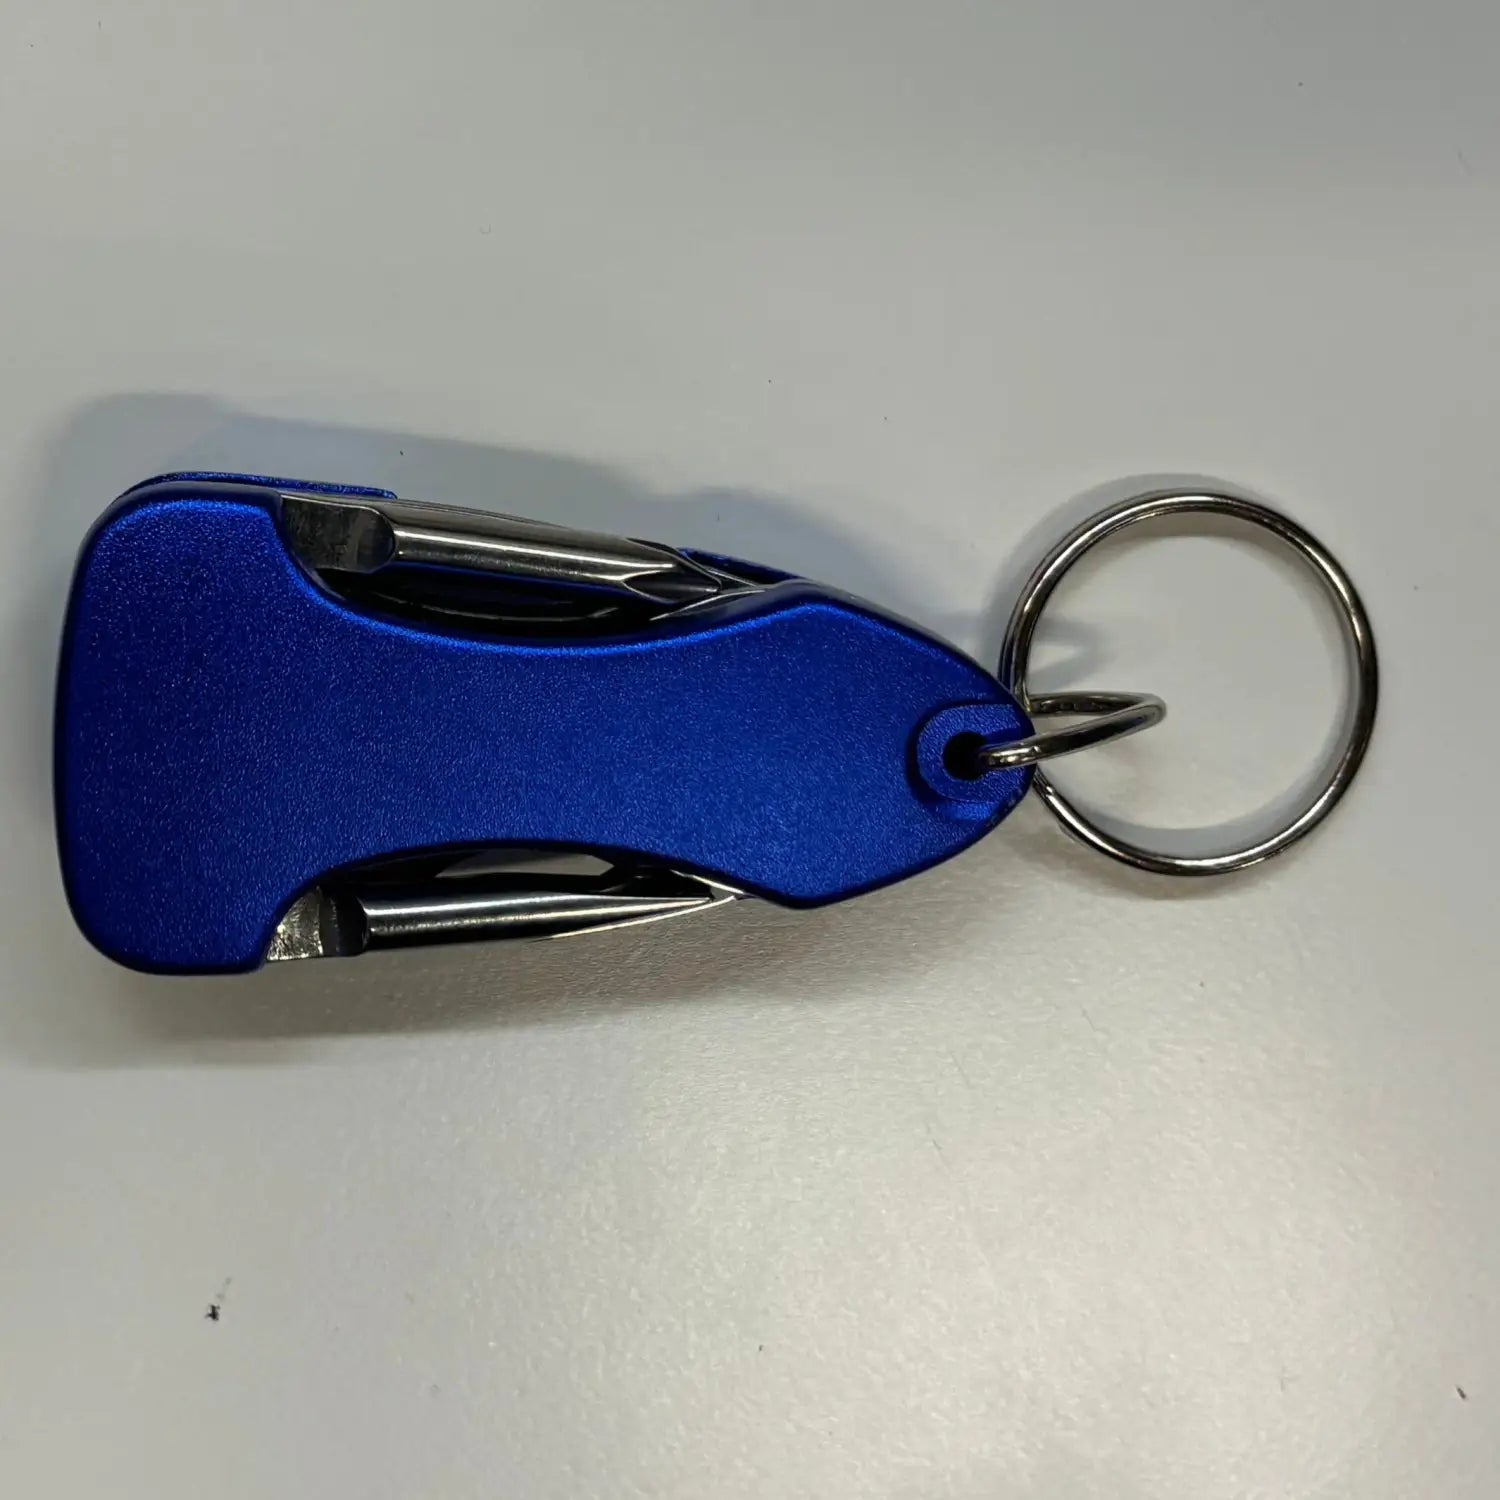 Multitool Keychain - Blue - Multitool